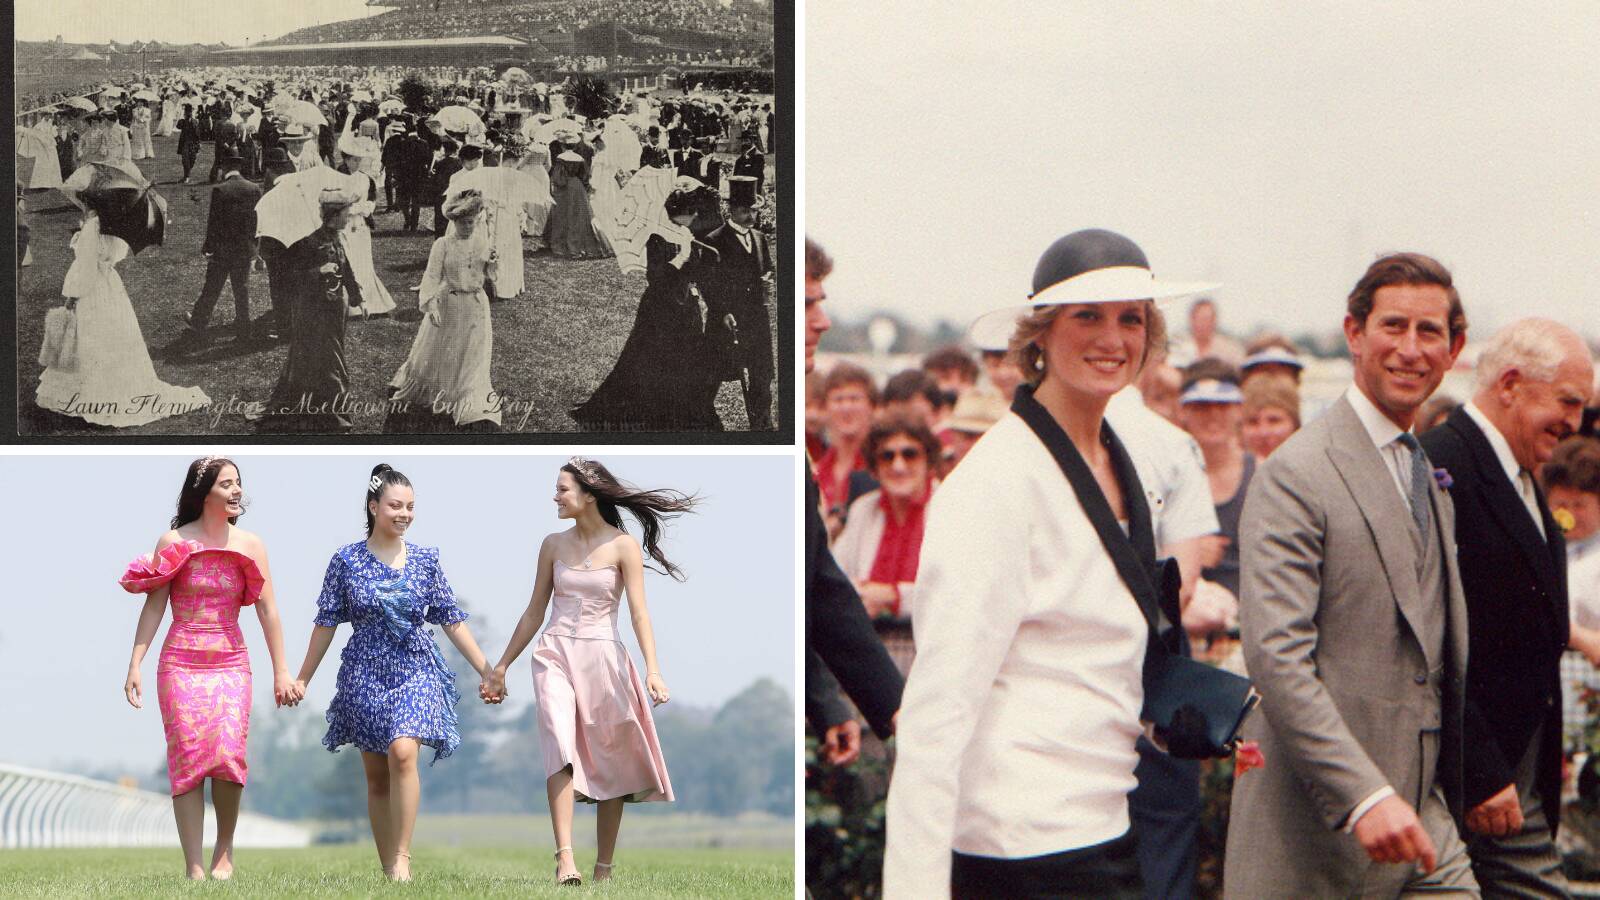 Melbourne Cup fashion: Shorts allowed at Flemington Races, Birdcage, Dress  Code changes through history, Jean Shrimpton